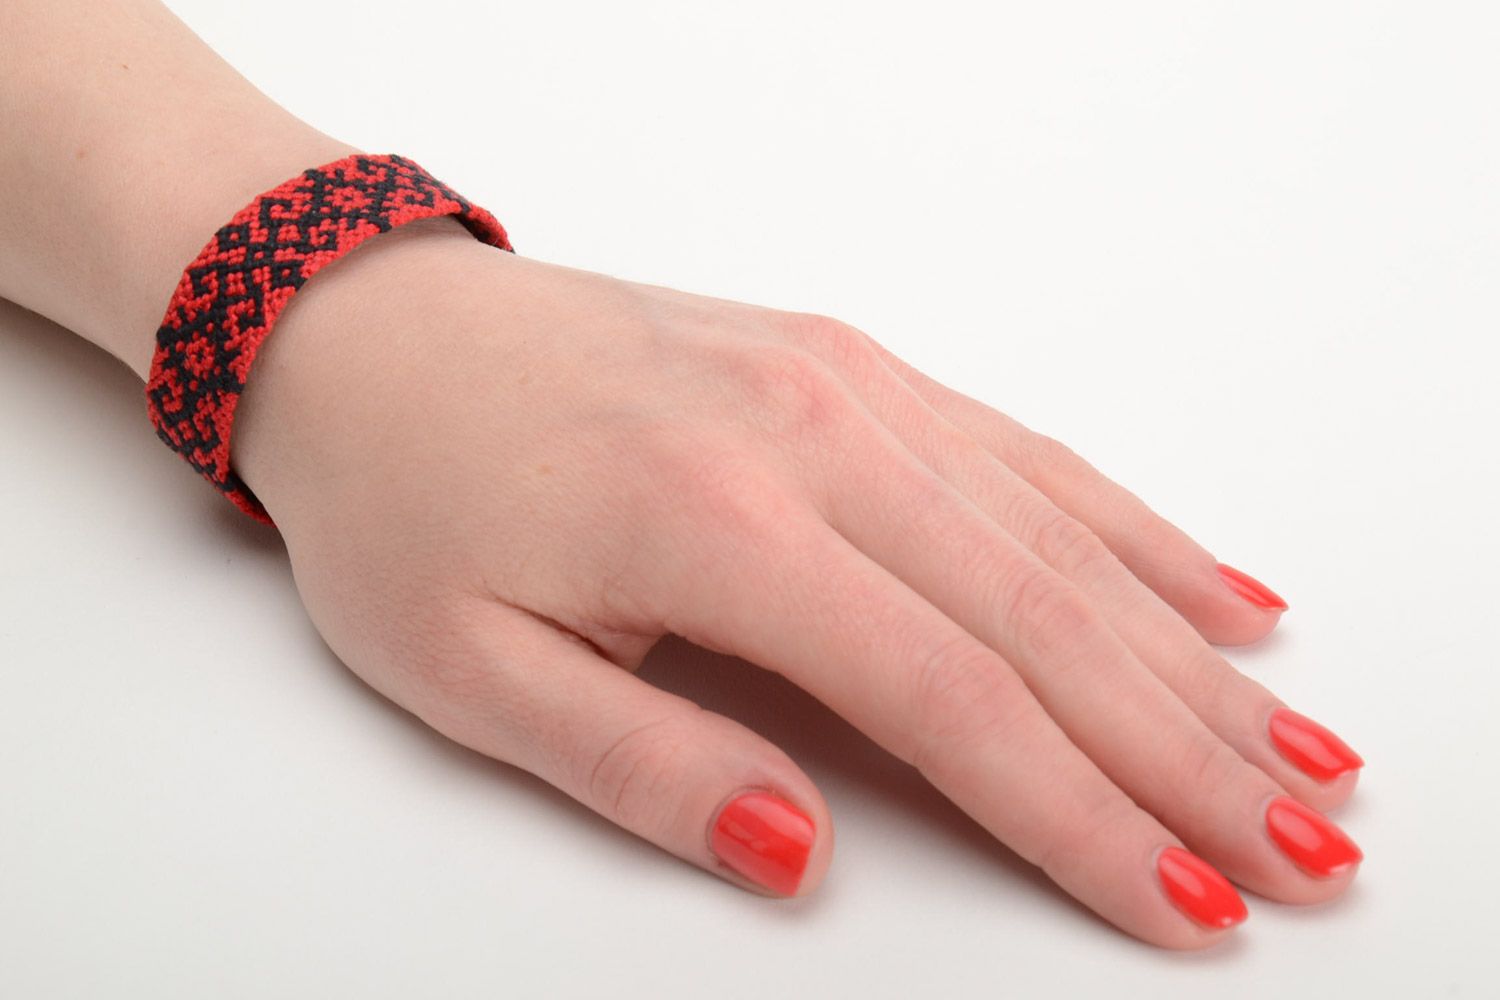 Текстильный браслет из ниток наручный красный с черным орнаментом ручная работа фото 5